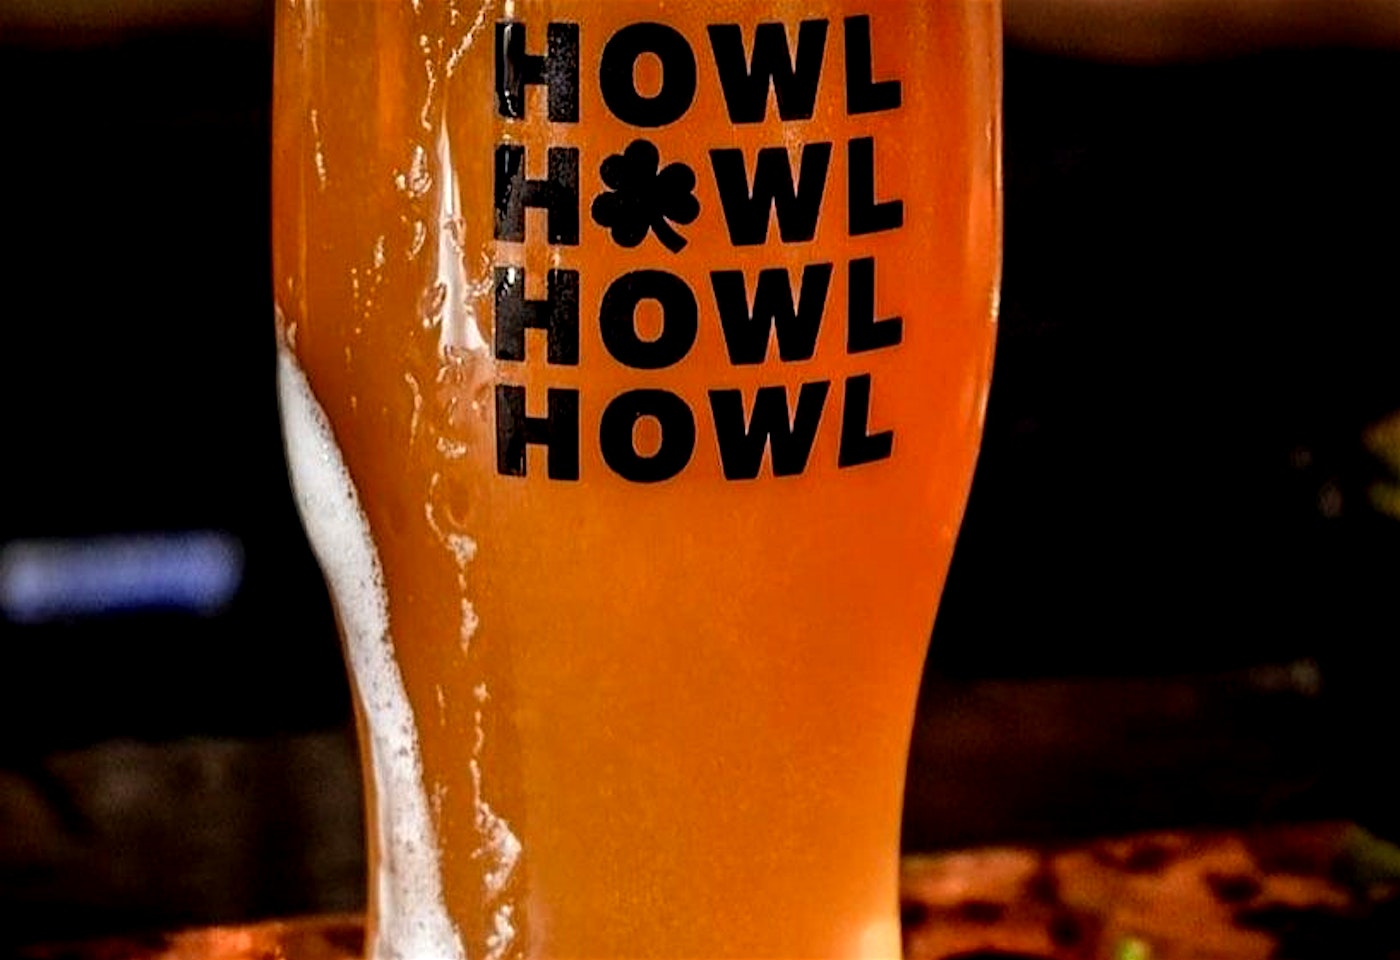 Howl at the moon hoxton bar beer